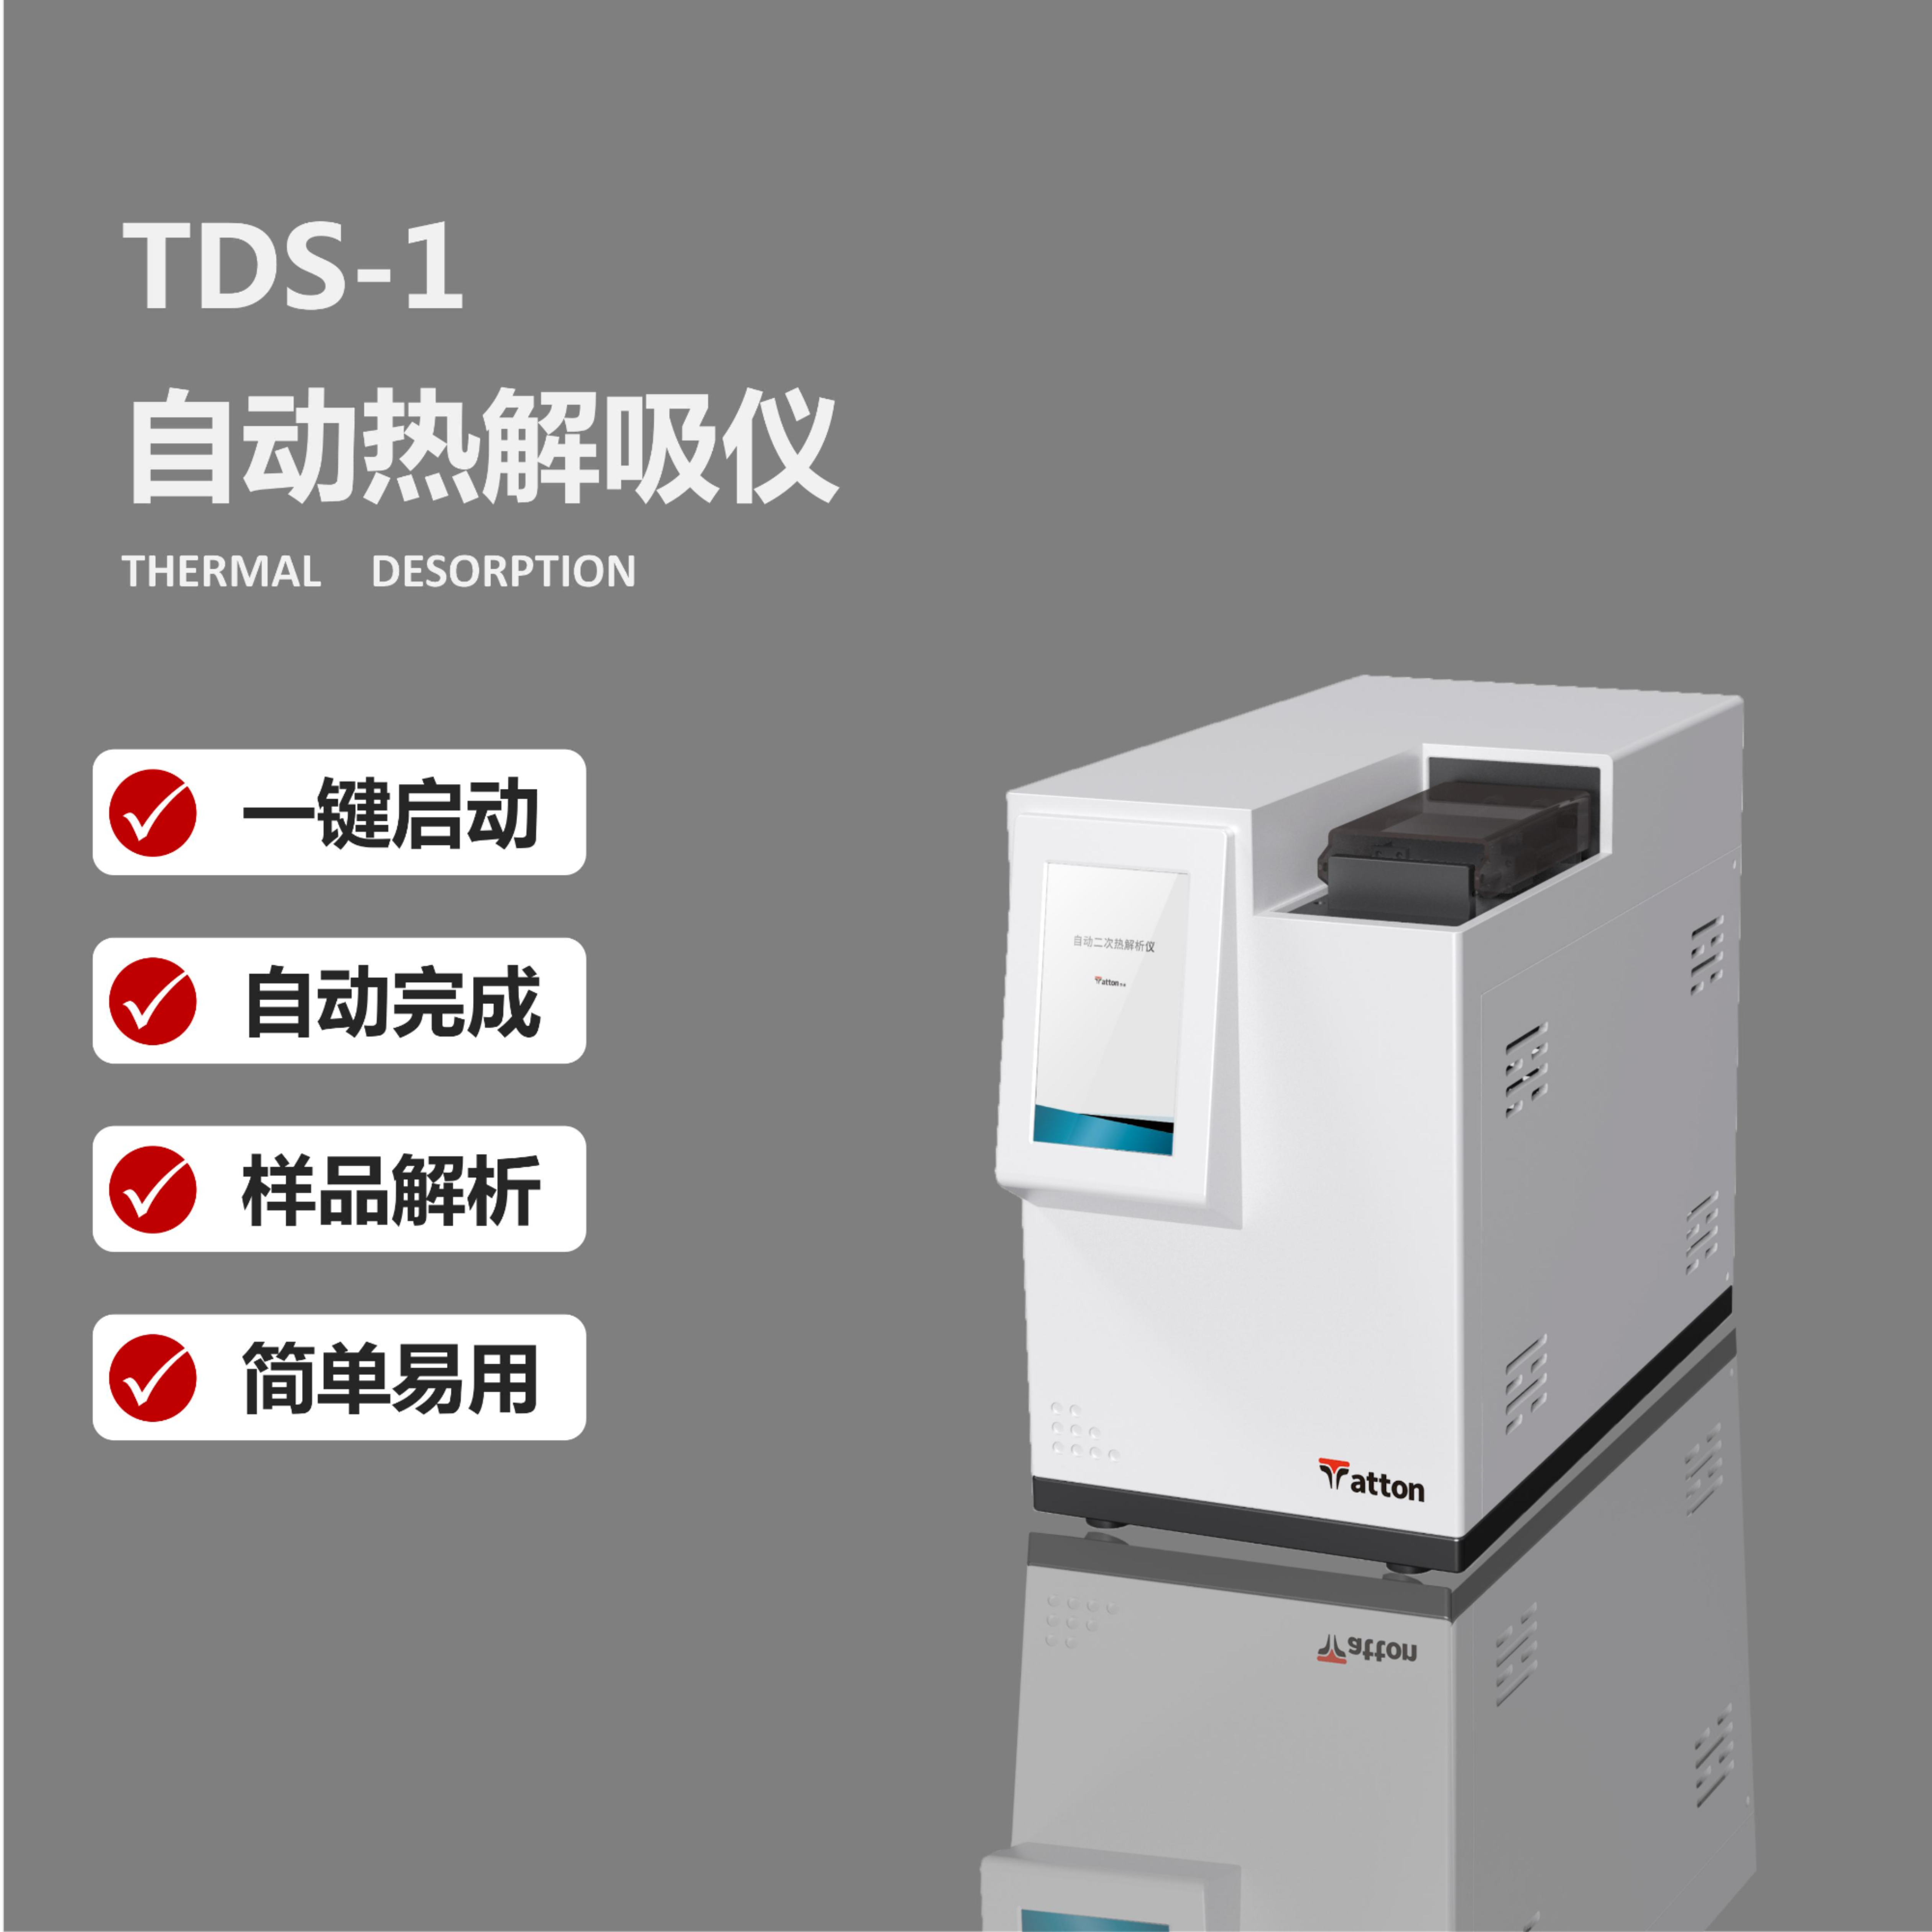 自动热解吸仪 TDS-1 泰通